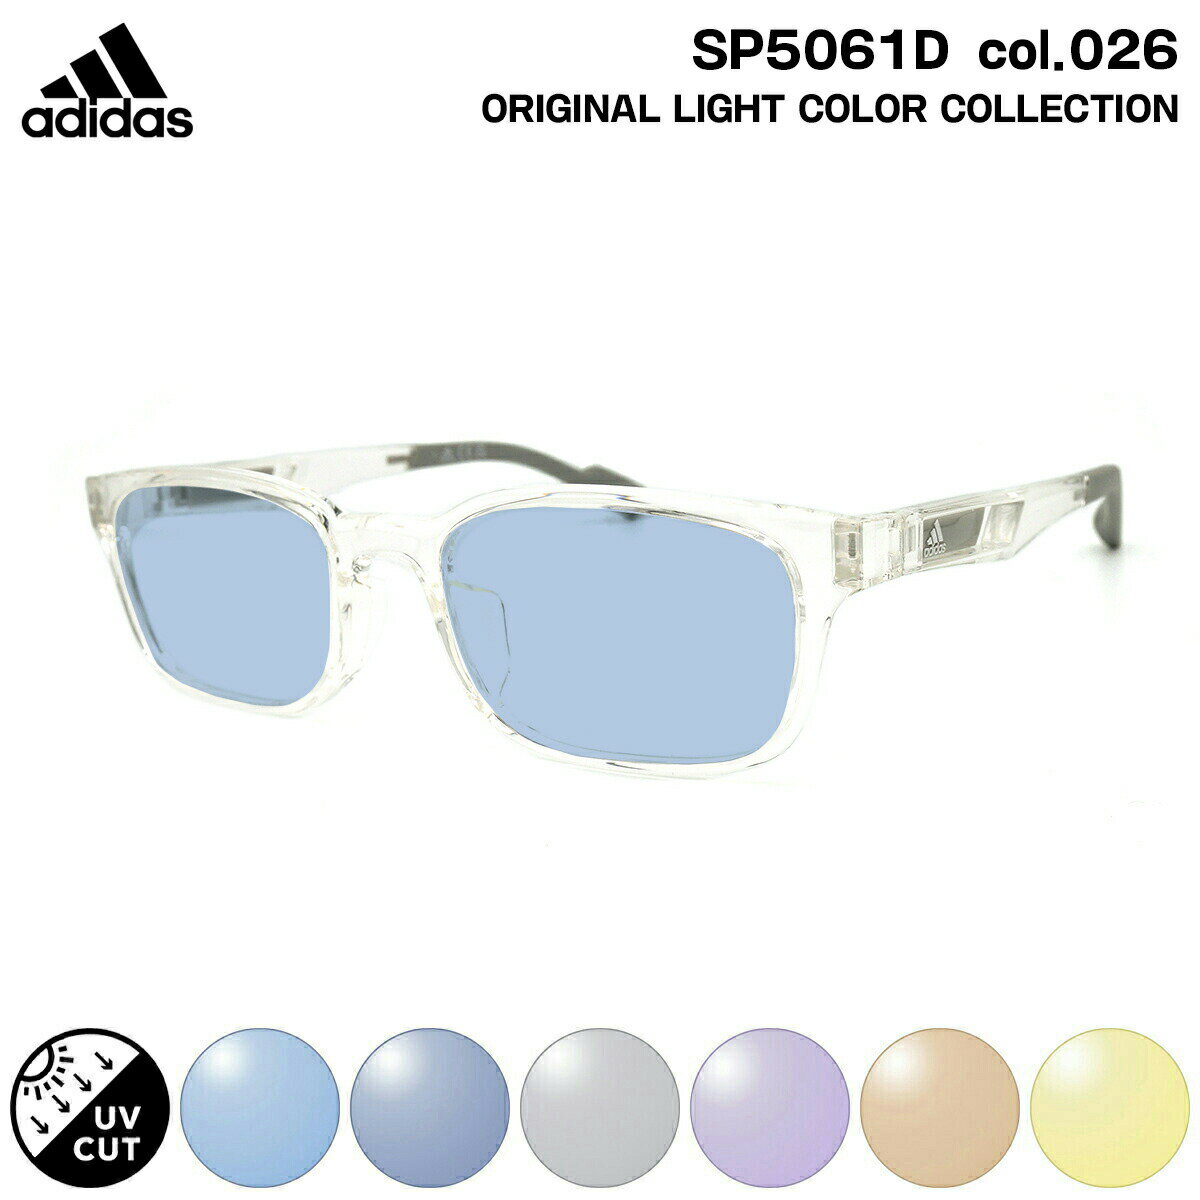 アディダス サングラス ライトカラー SP5061D (SP5061D/V) col.026 53mm adidas アジアンフィット 国内正規品 UVカット メンズ レディース